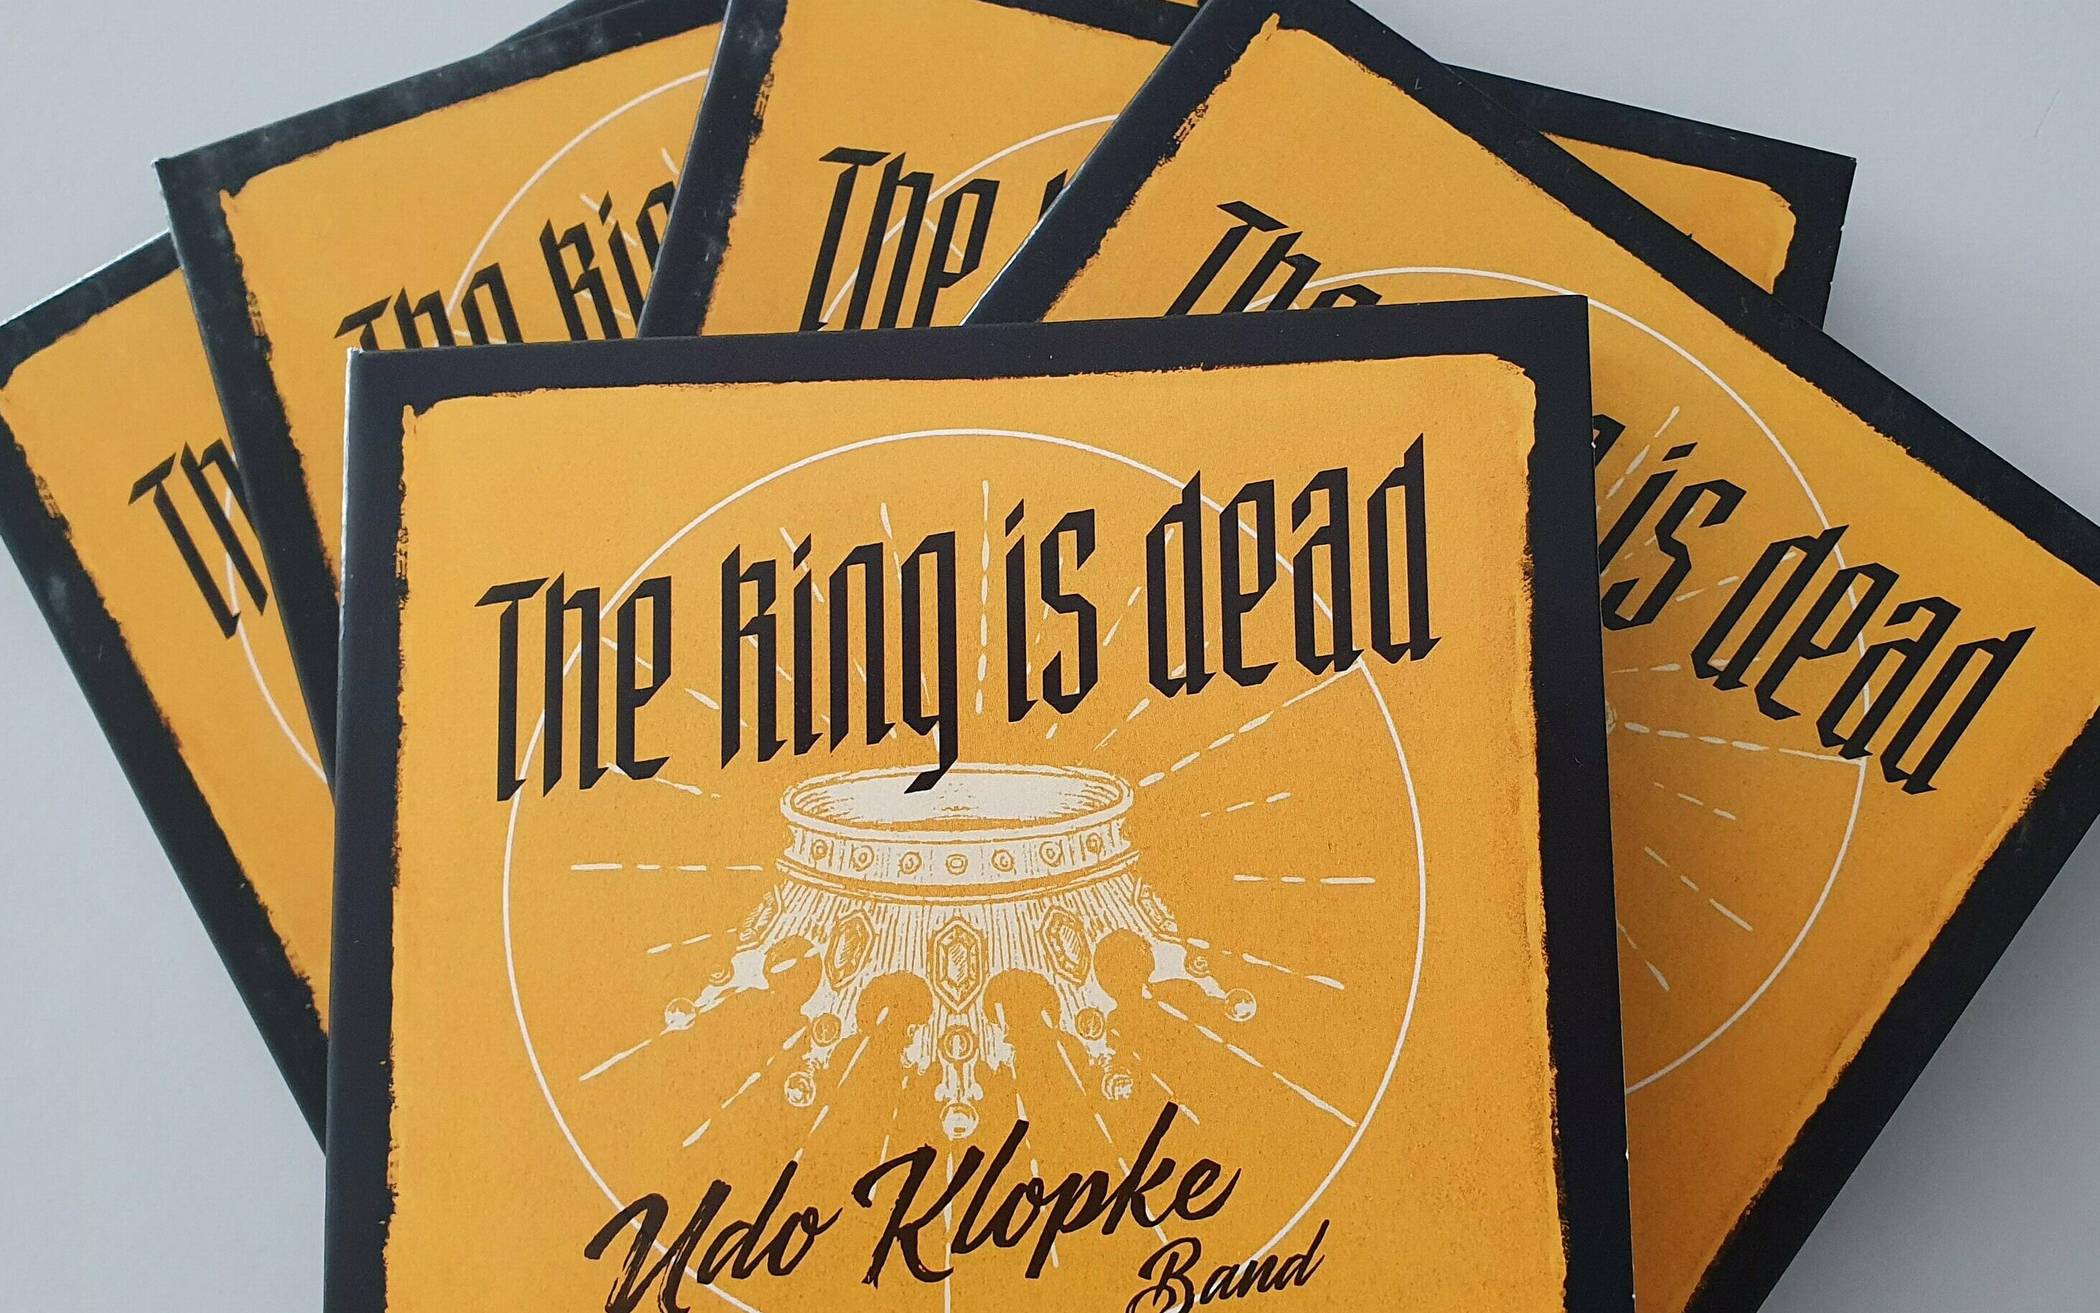  Der Stadt-Kurier verlost fünf Exemplare des Albums „The King is dead“. 